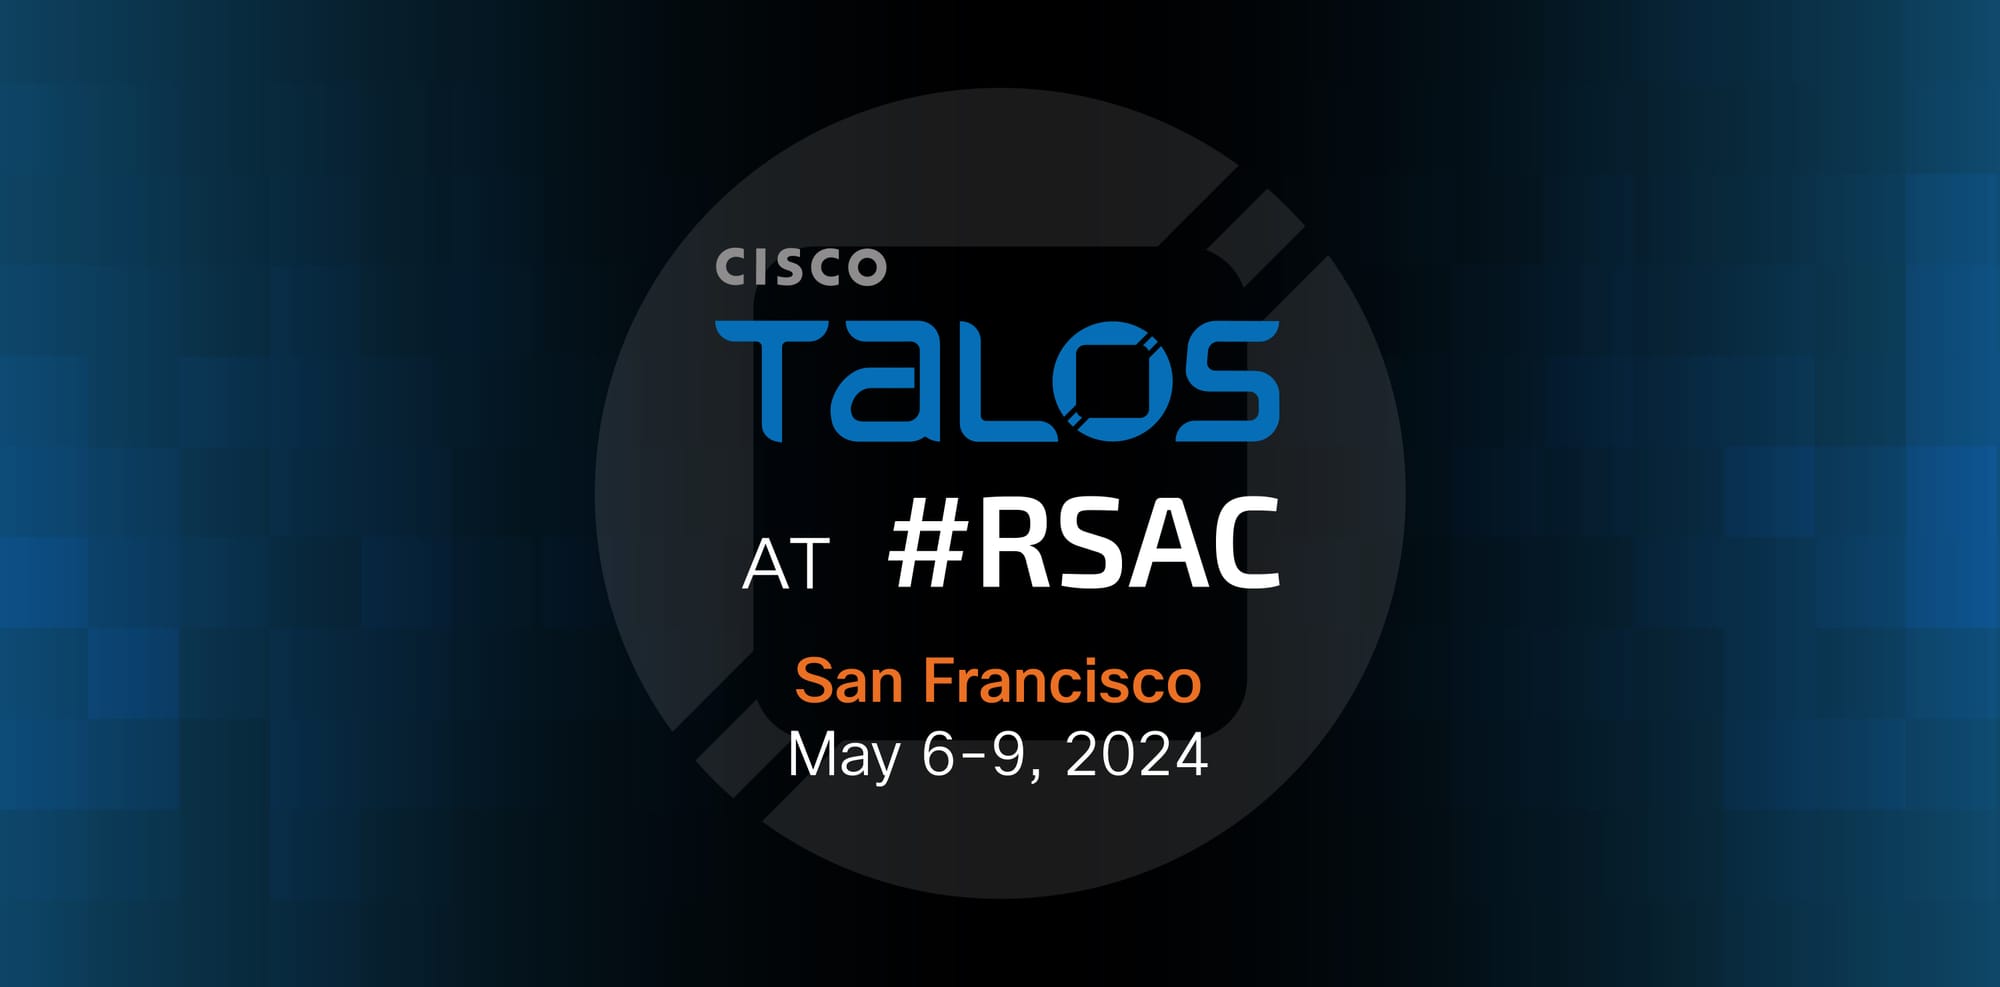 Cisco Talos at RSAC 2024